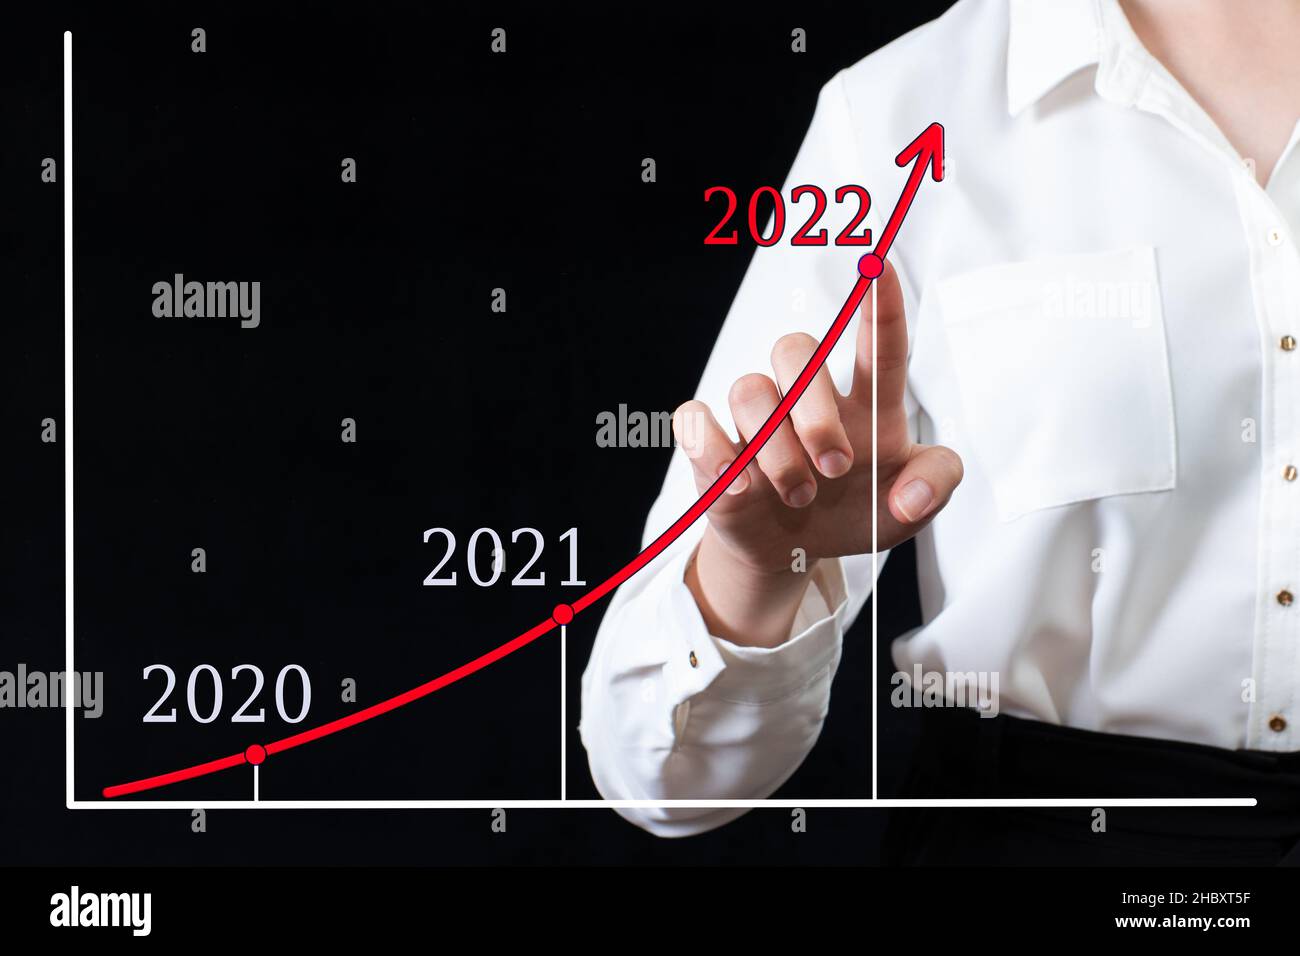 Ein Geschäftsmann zeigt seine Hand auf ein Pfeildiagramm mit hohen Wachstumsraten im Jahr 2022 gegenüber 2020 und 2021. Die Frau plant, die finanzielle Leistung zu steigern Stockfoto